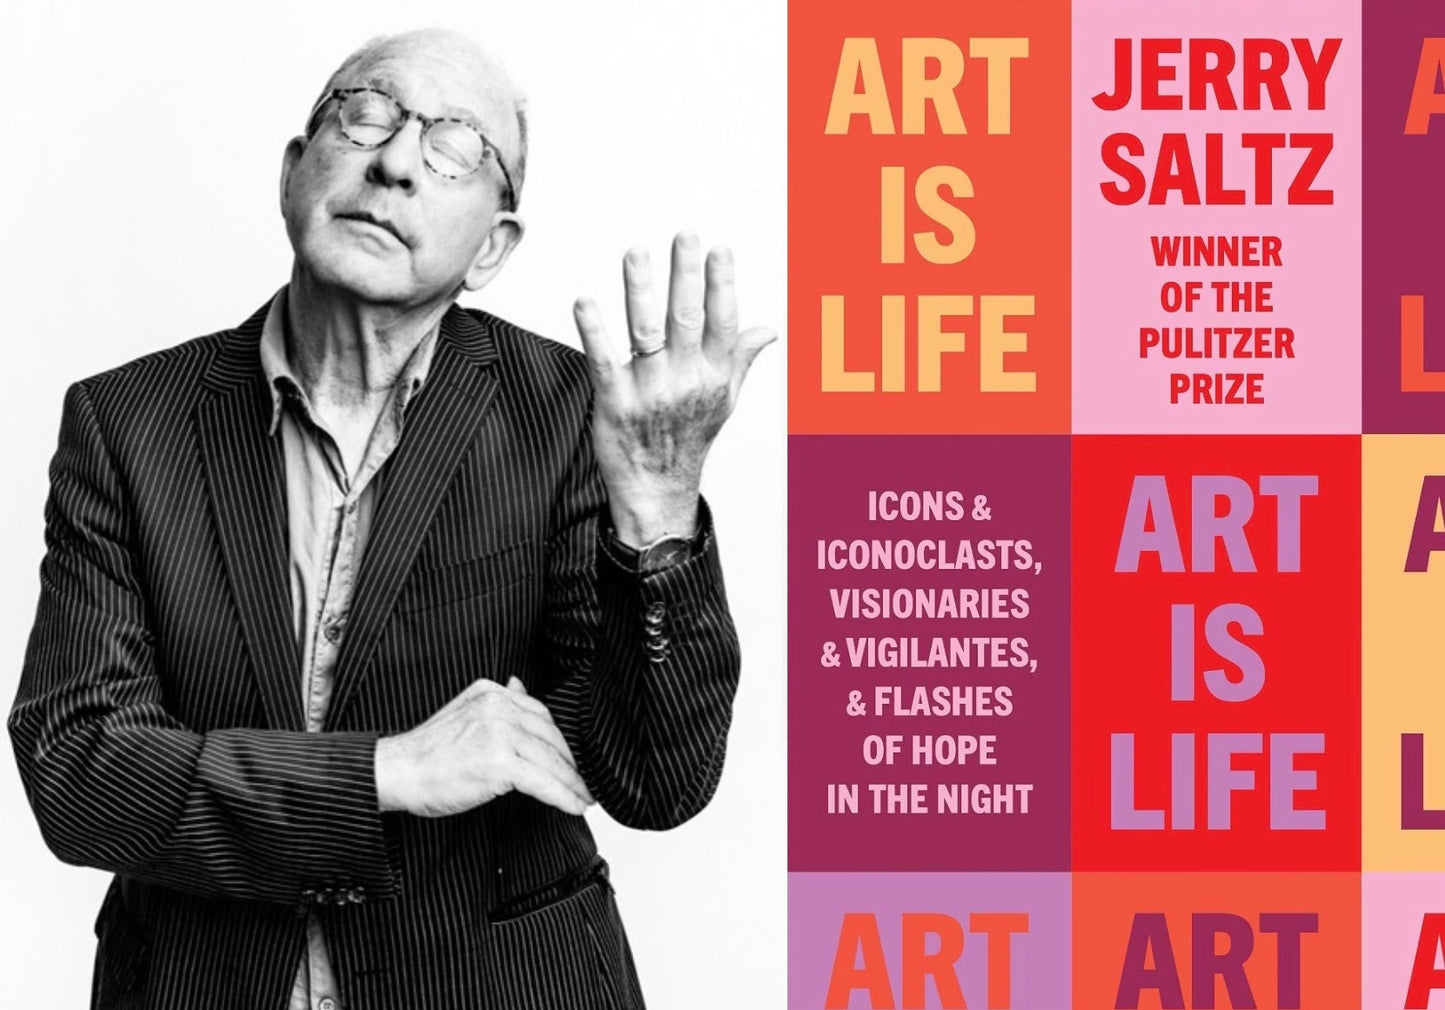 Saltz, Jerry "Art is Life"